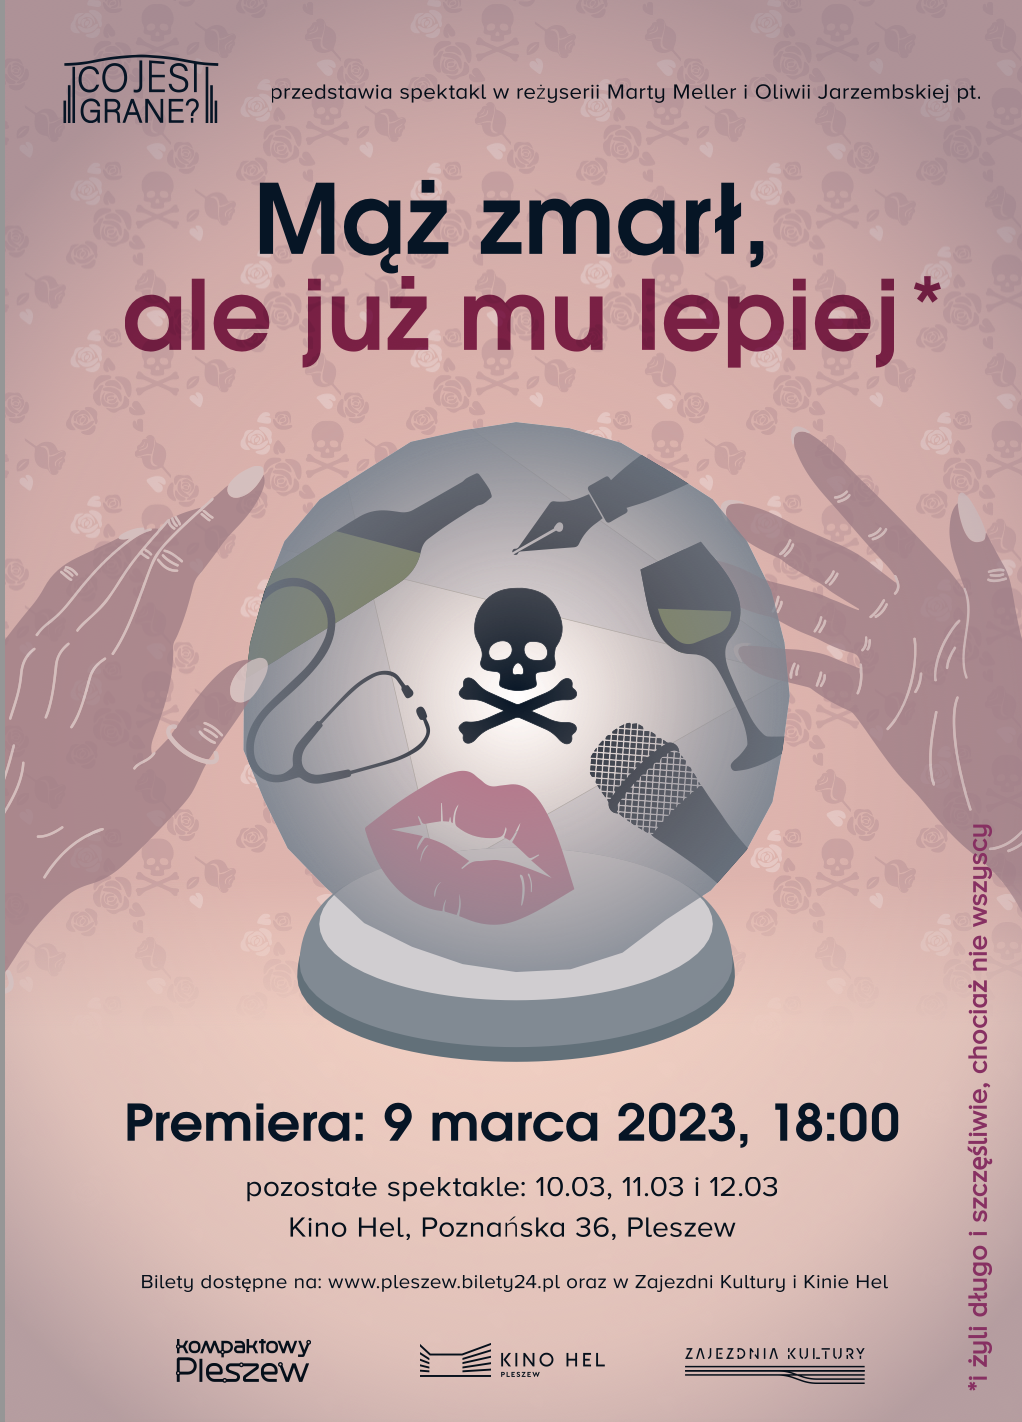 Plakat premiery spektaklu Teatru Co Jest Grane pt. "Mąż zmarł, ale już mu lepiej" odbywającej się w Kinie Hel w Pleszewie 9 marca 2023 roku o godzinie 18:00